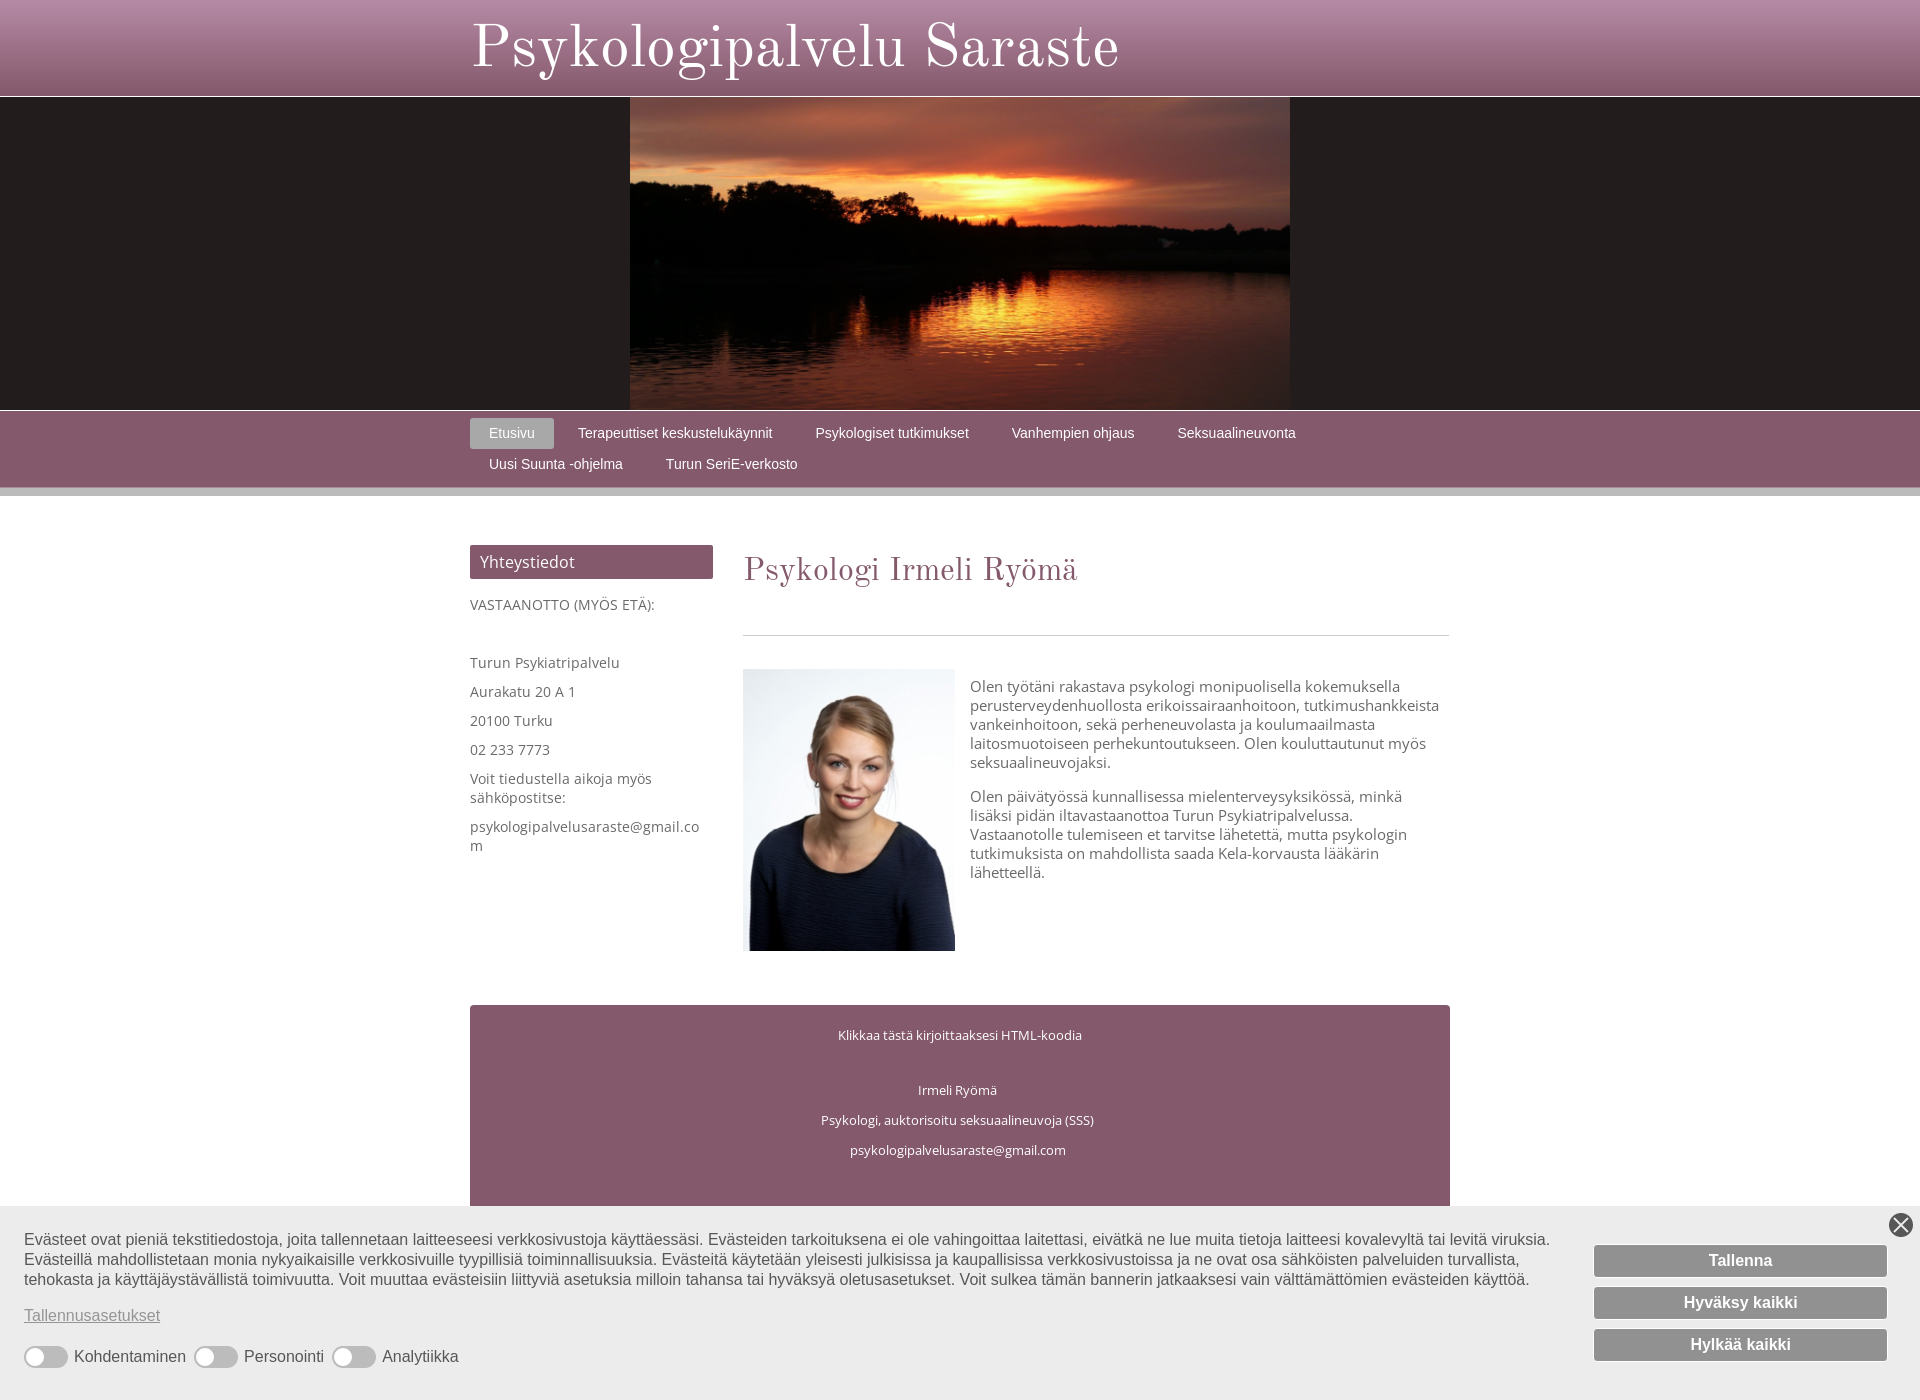 Näyttökuva psykologipalvelusaraste.fi